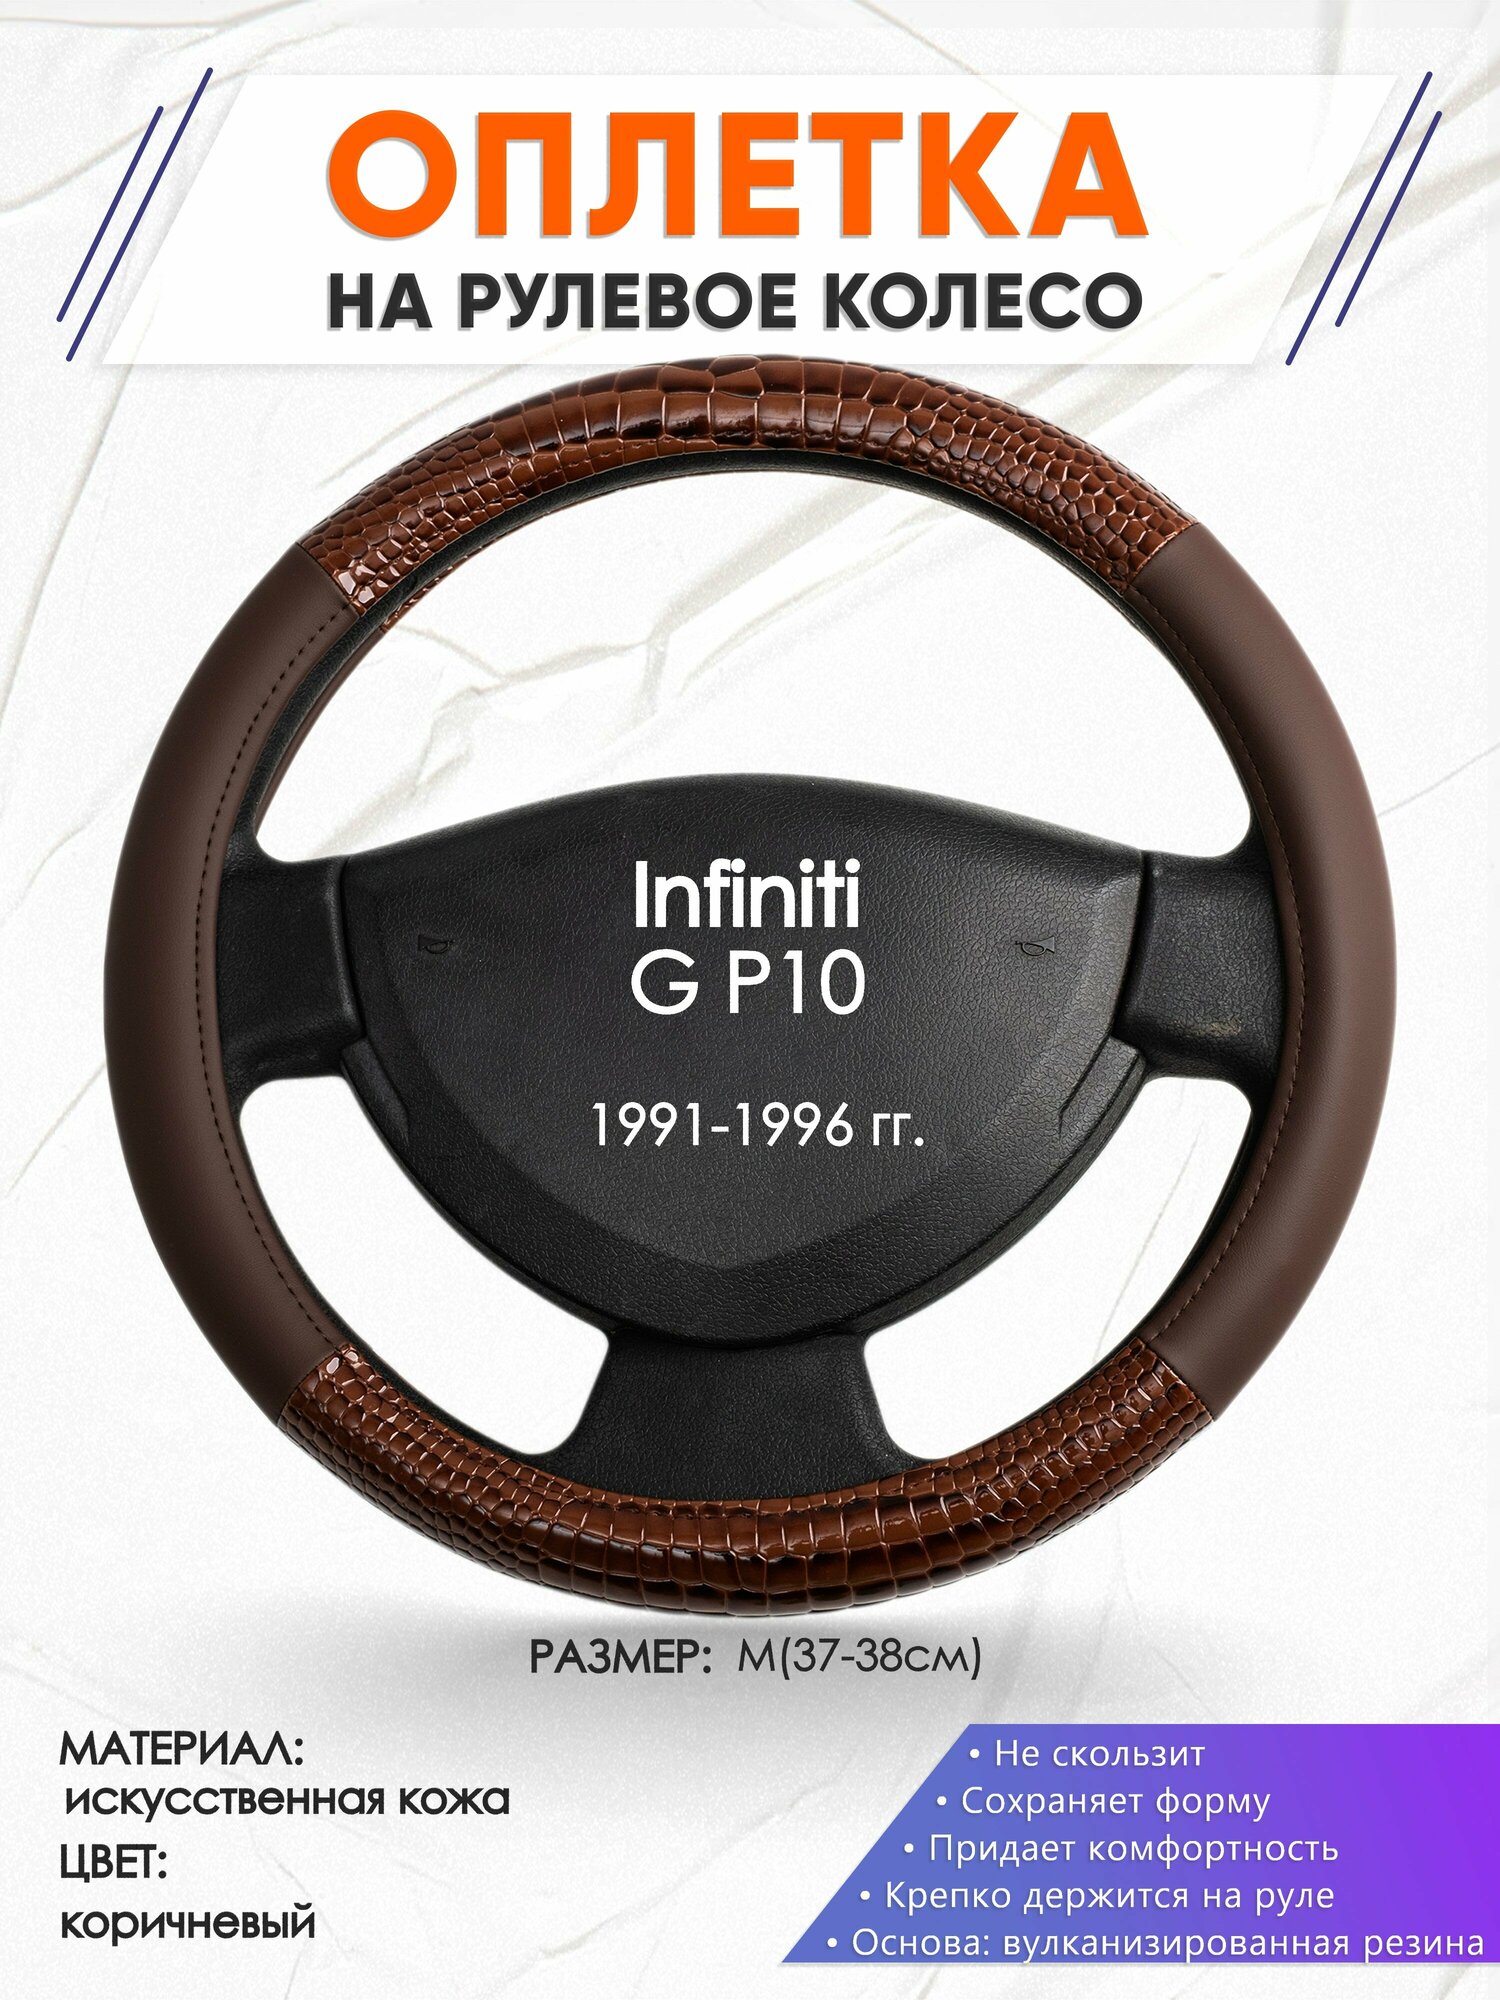 Оплетка наруль для Infiniti G P10(Инфинити ) 1991-1996 годов выпуска, размер M(37-38см), Искусственная кожа 85